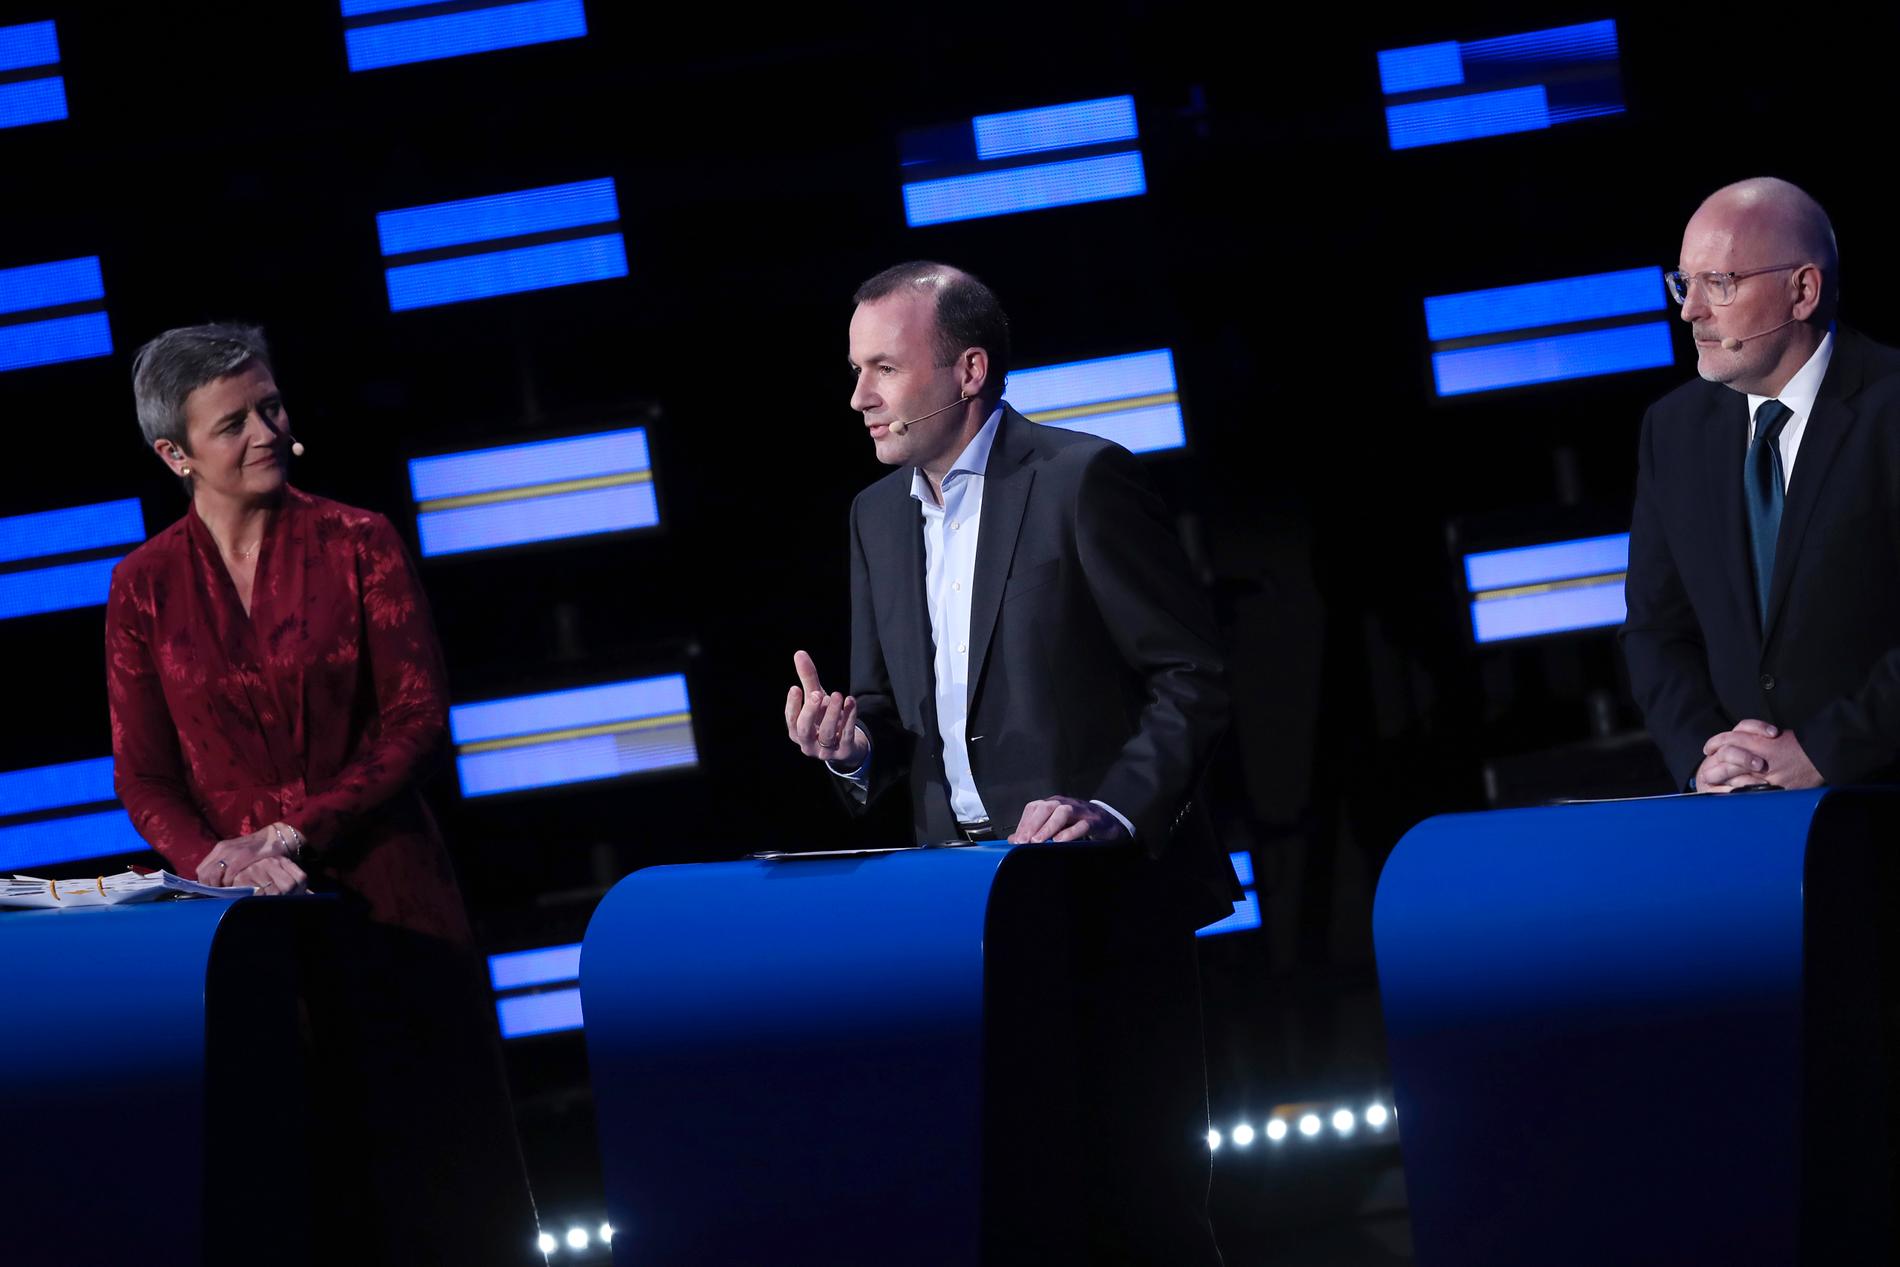 Danska Margrethe Vestager, tyske Manfred Weber och nederländske Frans Timmermans var de största partigruppernas toppkandidater i EU-valet. Men det är fortsatt oklart om någon av dem kan bli nästa ordförande i EU-kommissionen.